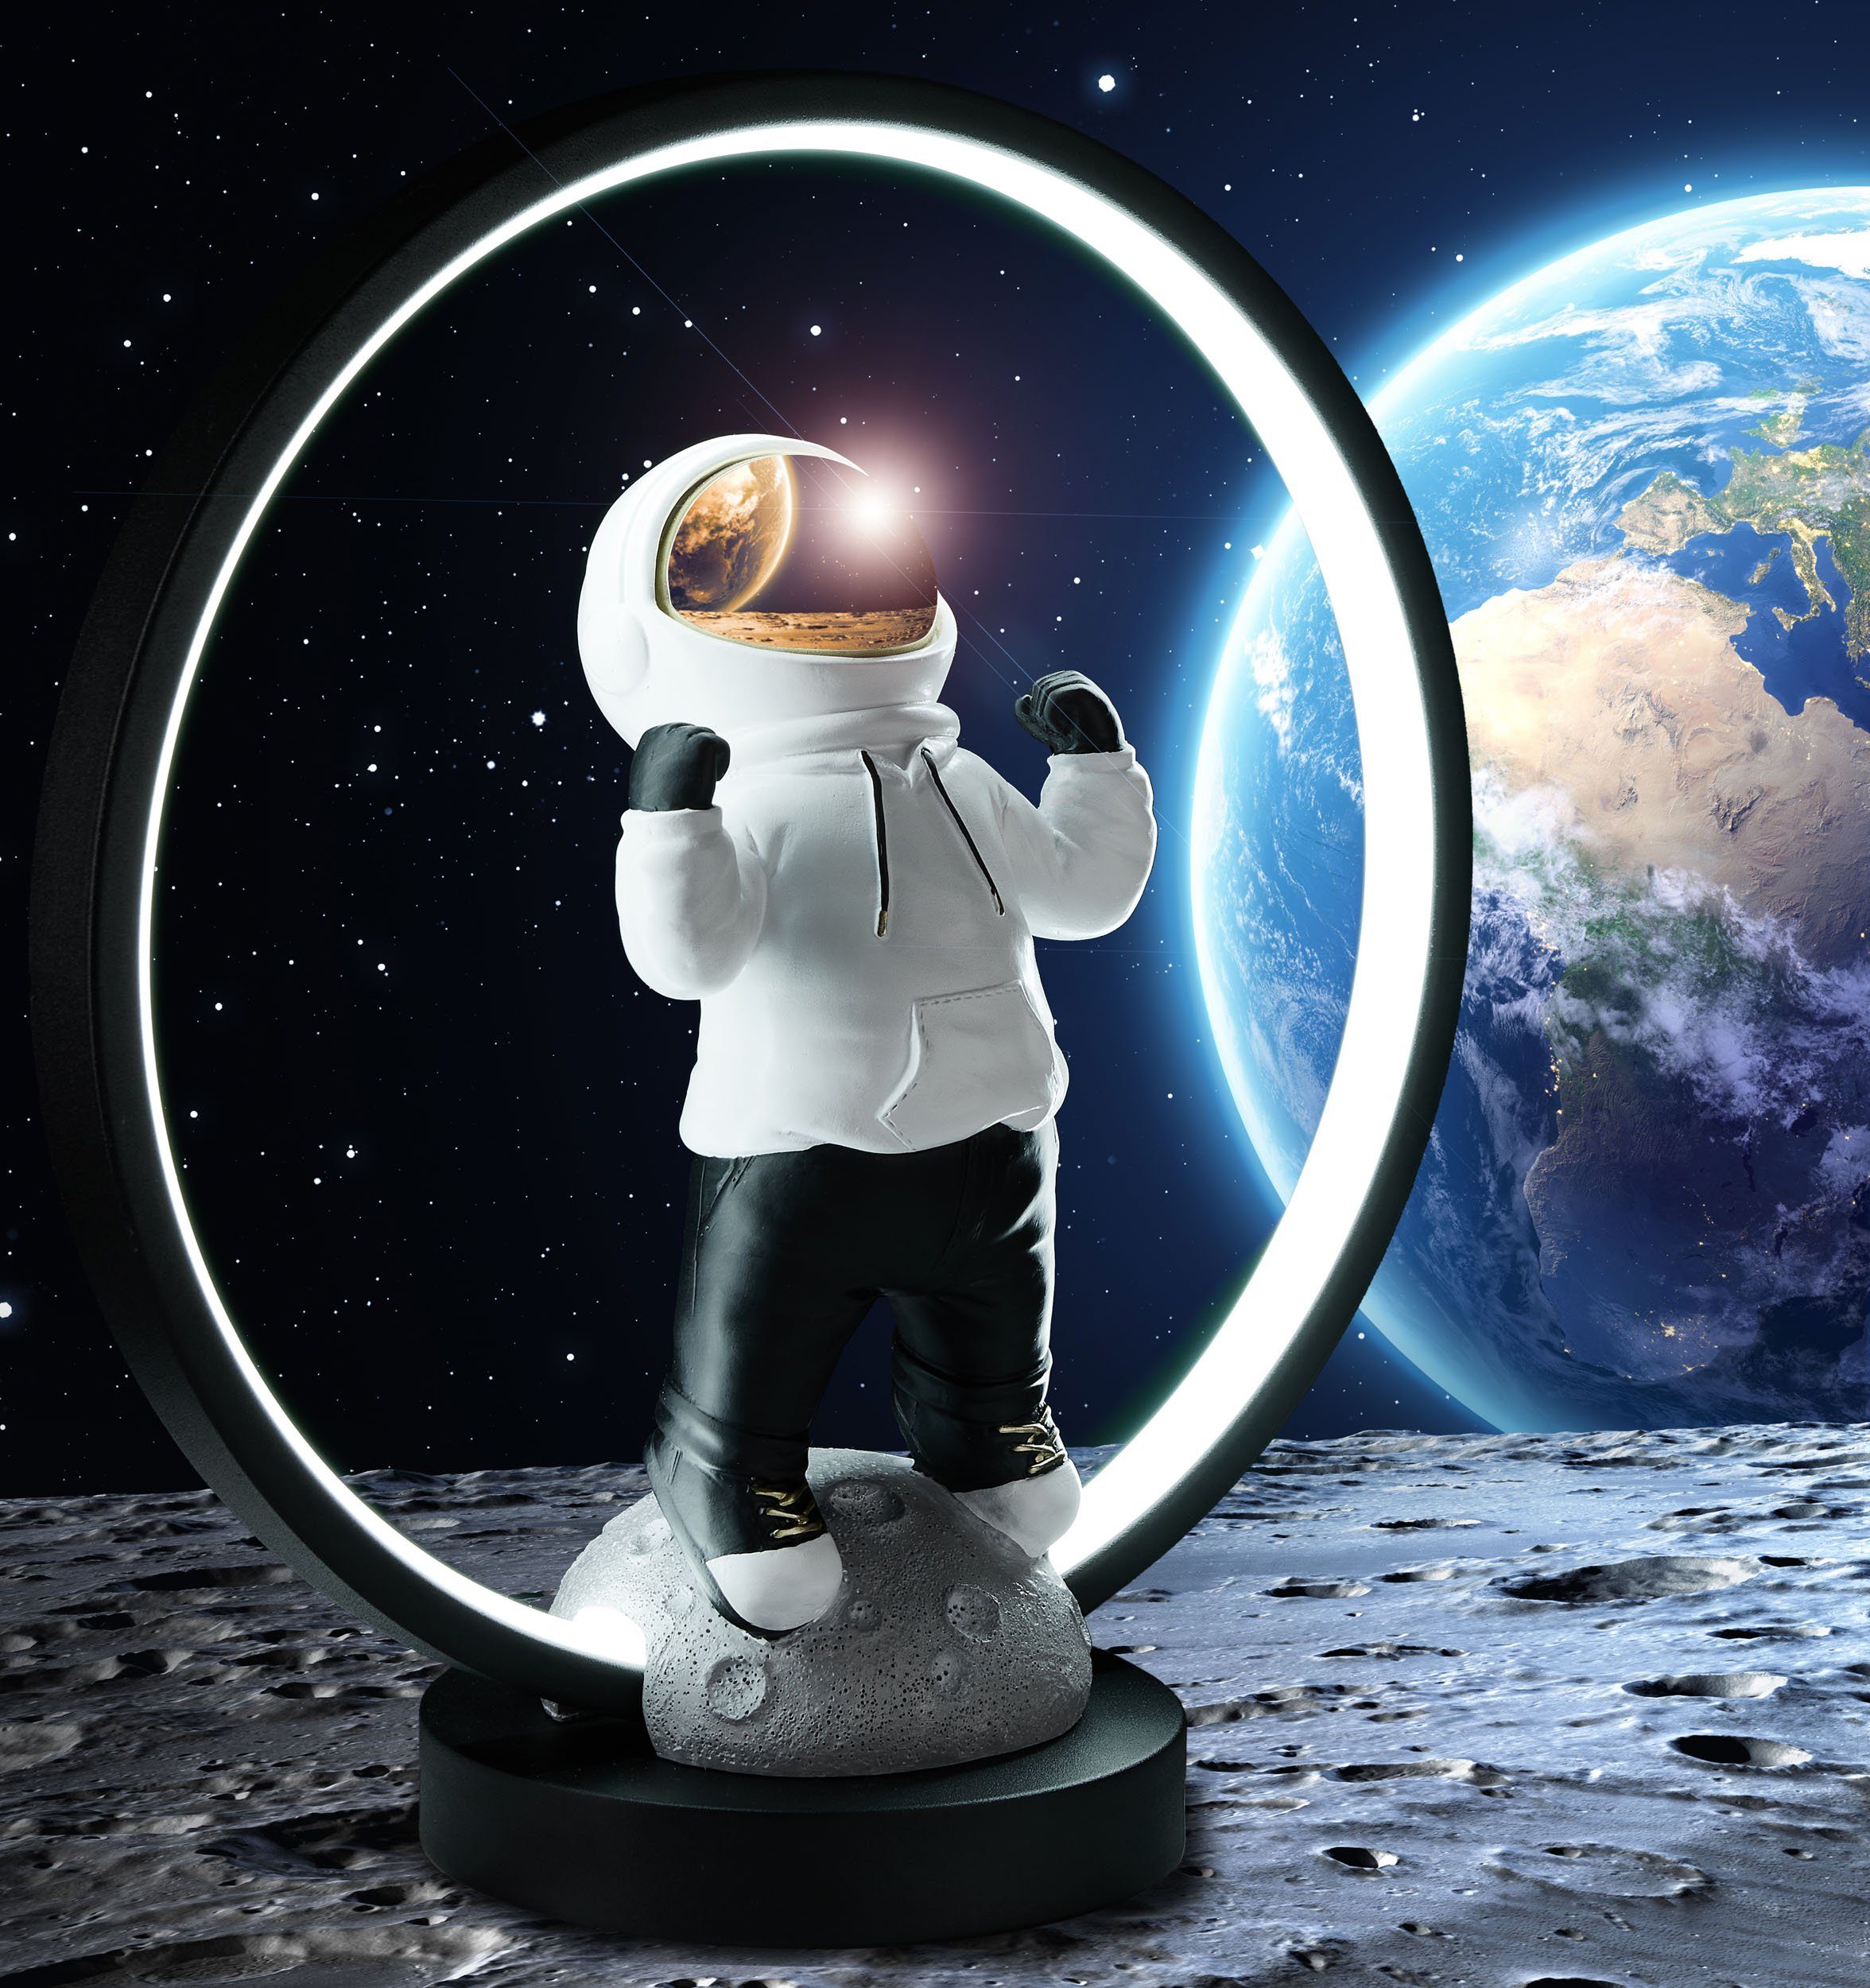 BRUBAKER LED Stecker, indirekter Hoodie Weltraum Nachttischlampe mit und fest USB-C LED-Ring integriert, verchromtem und Tischlampe Beleuchtung Gold mit Anime Pose, Handbemalte cm - Helm 33 mit Astronaut LED Tischleuchte in